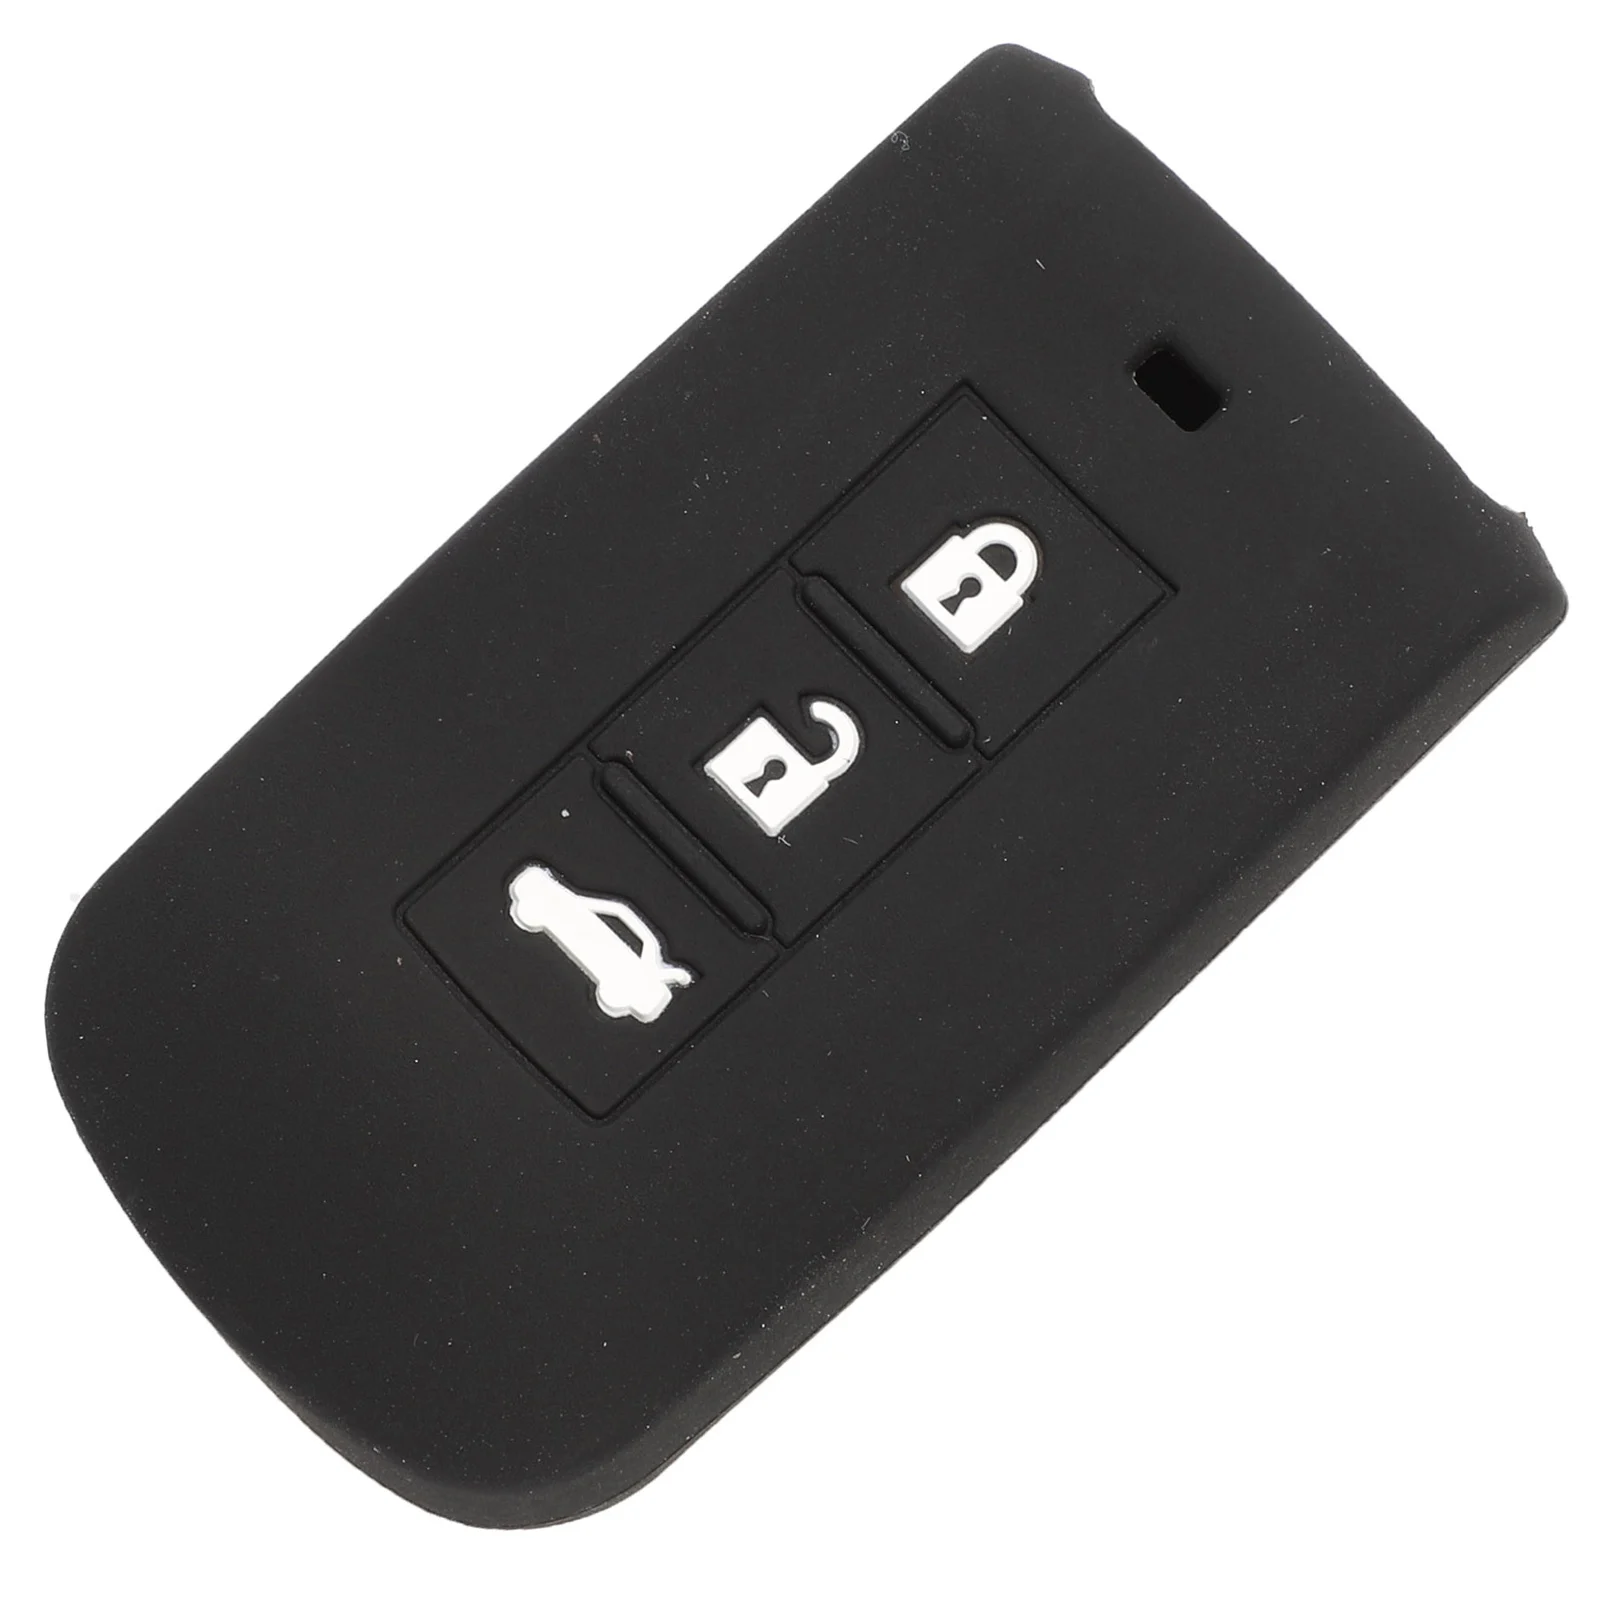 Jingyuqin 30x силиконовый чехол для ключей от машины крышка набор fob для Mitsubishi Outlander, Lancer EX ASX colt Grandis L200 3 кнопки дистанционного ключа - Название цвета: Черный